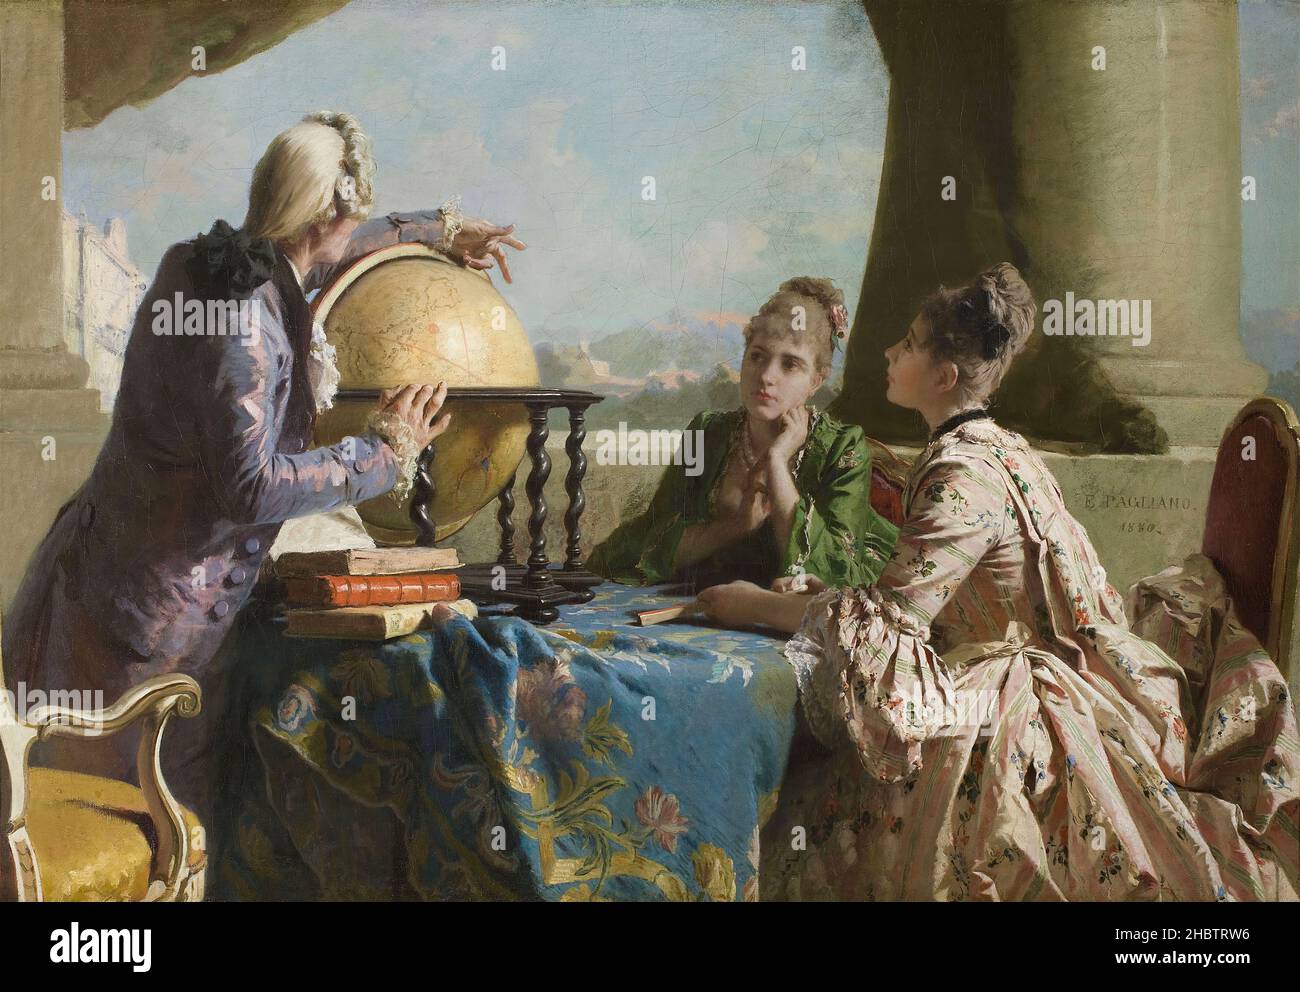 La lezione di geografia - 1880 - óleo sobre lienzo 180 x 125,7 cm - Pagliano Eleuterio Foto de stock